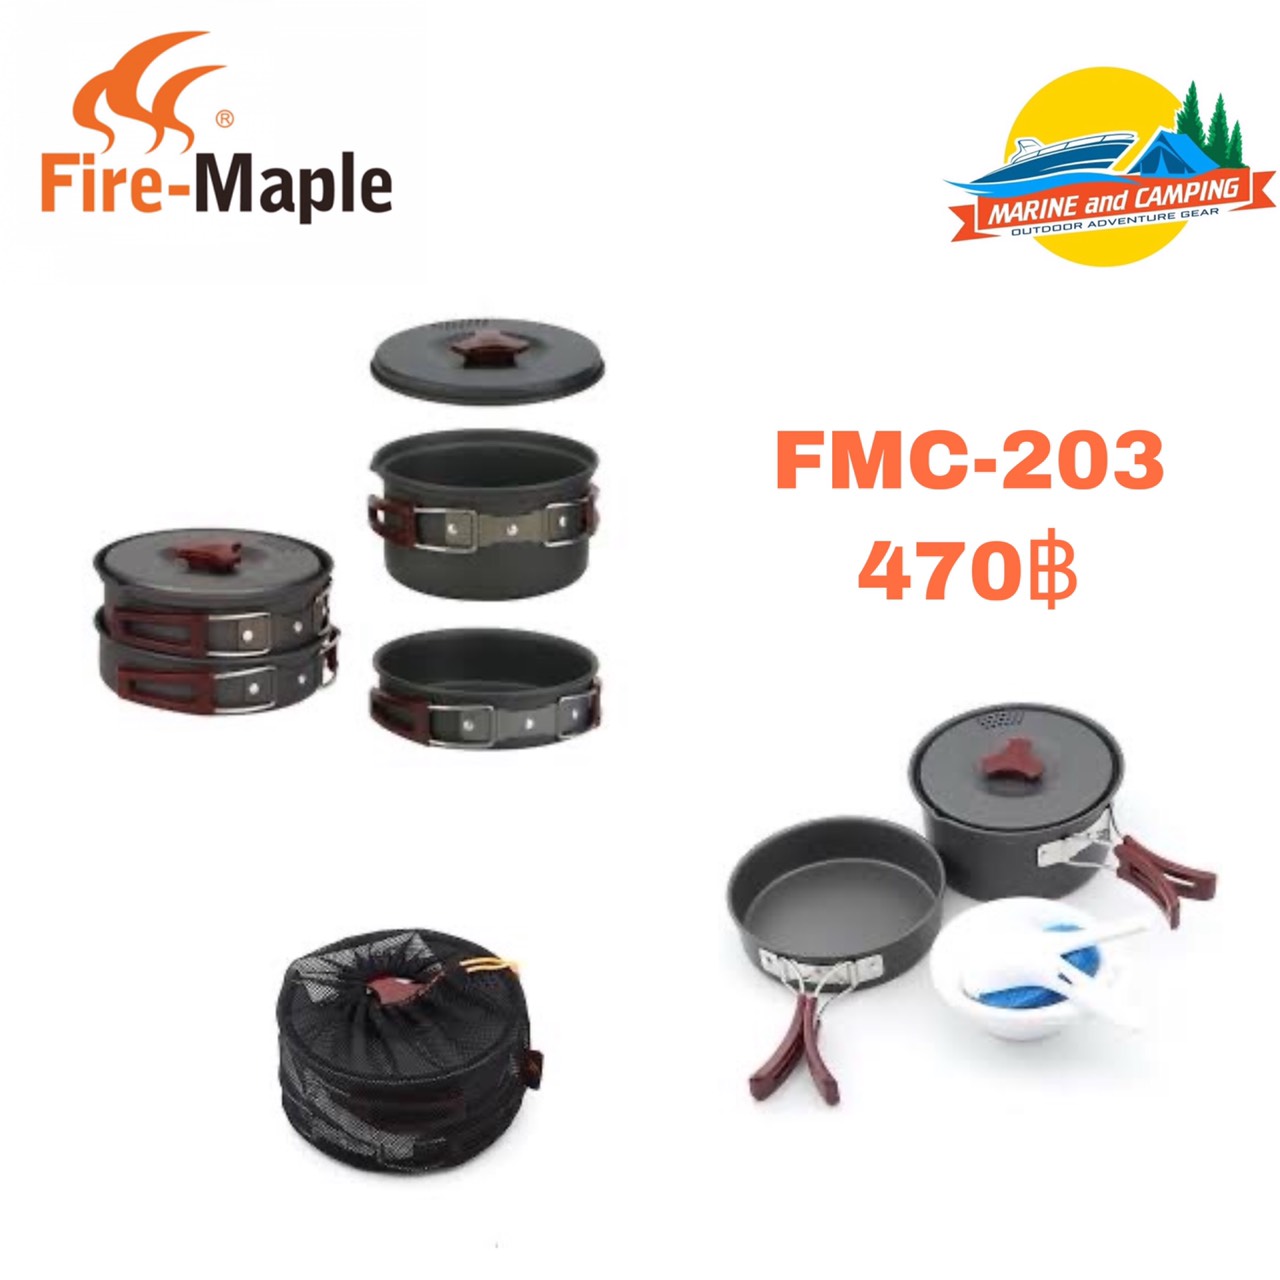 FireMaple FMC-203 Cookware